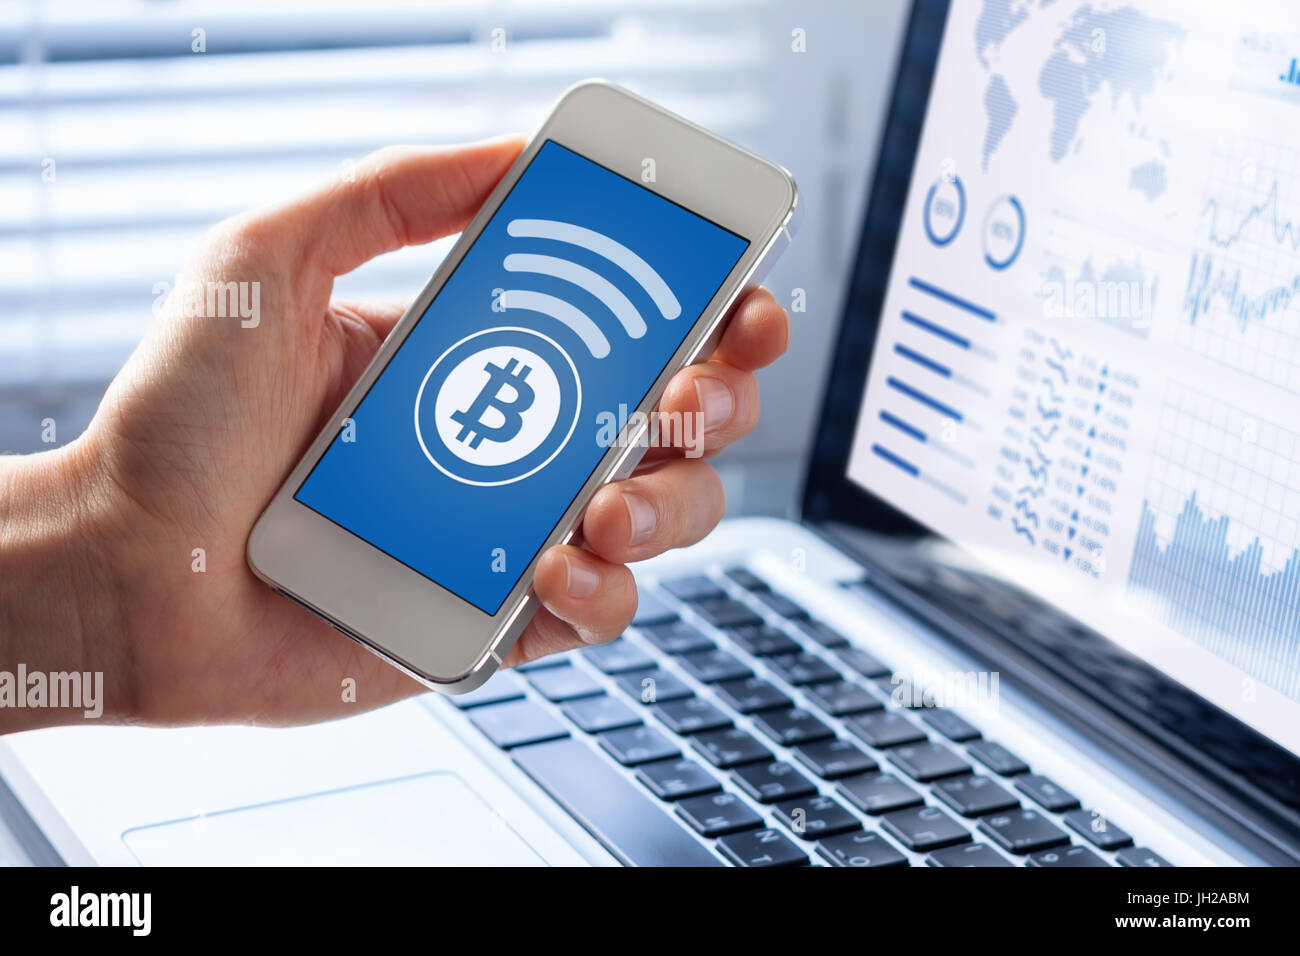 Persona che invia bitcoin con lo smartphone per il pagamento on-line, primo piano dello schermo di cellulare, business office background Foto Stock